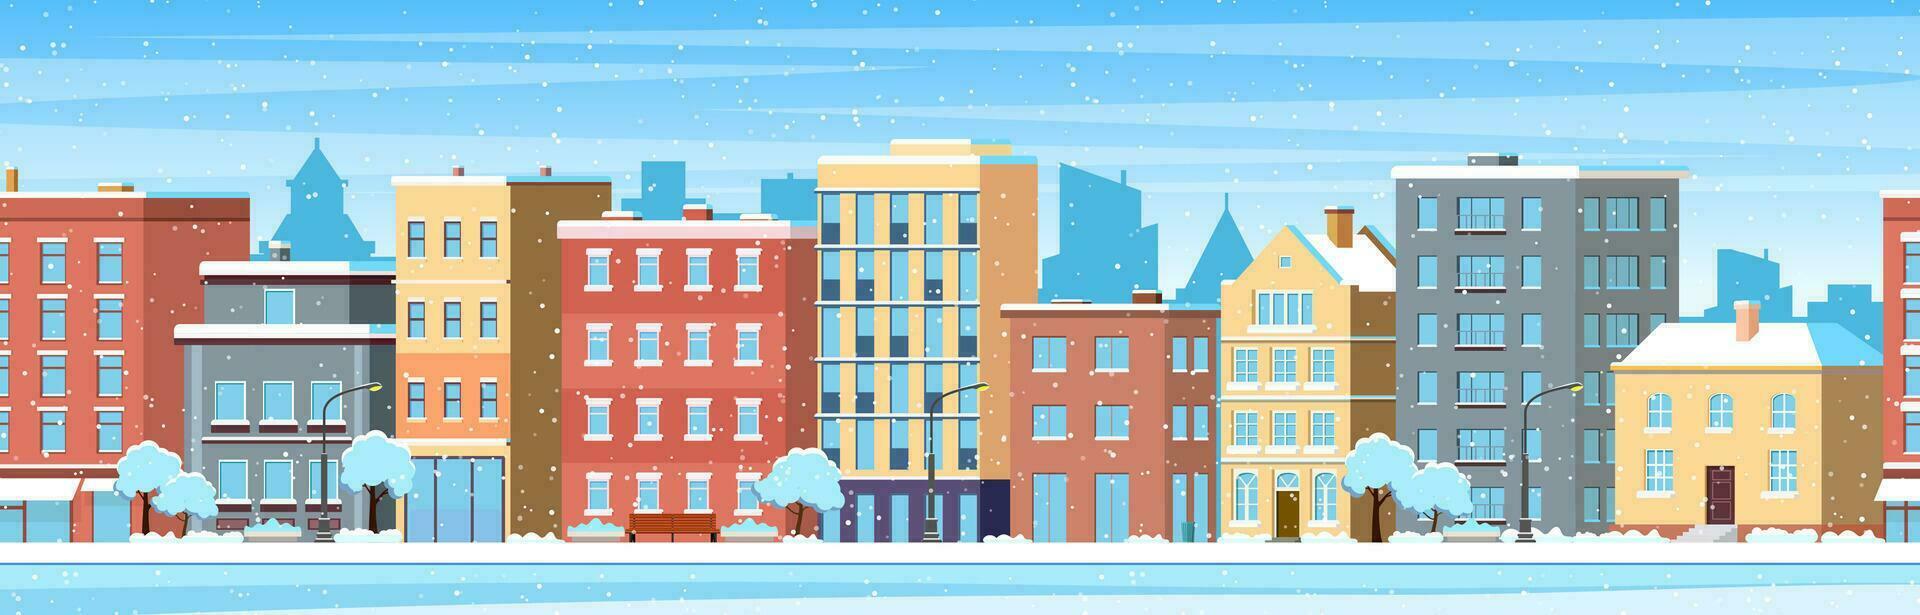 città edificio case inverno strada paesaggio urbano sfondo. allegro Natale contento nuovo anno concetto orizzontale striscione. vettore illustrazione nel piatto stile